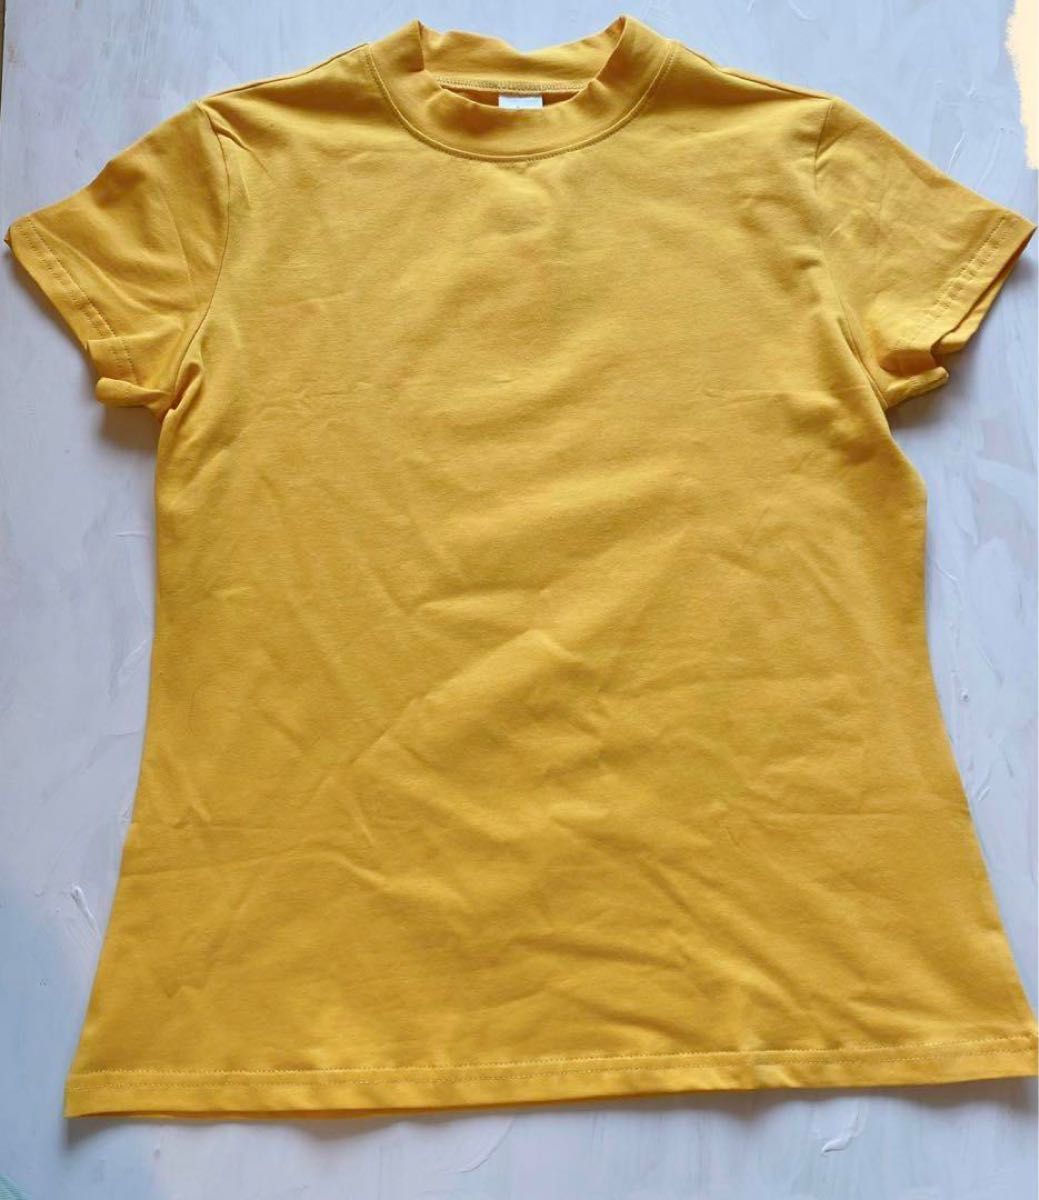 トップス Tシャツ ハイネック タイト イエロー 大人 可愛い シンプル 無地 半袖 レディース Lサイズ レイヤード インナー 